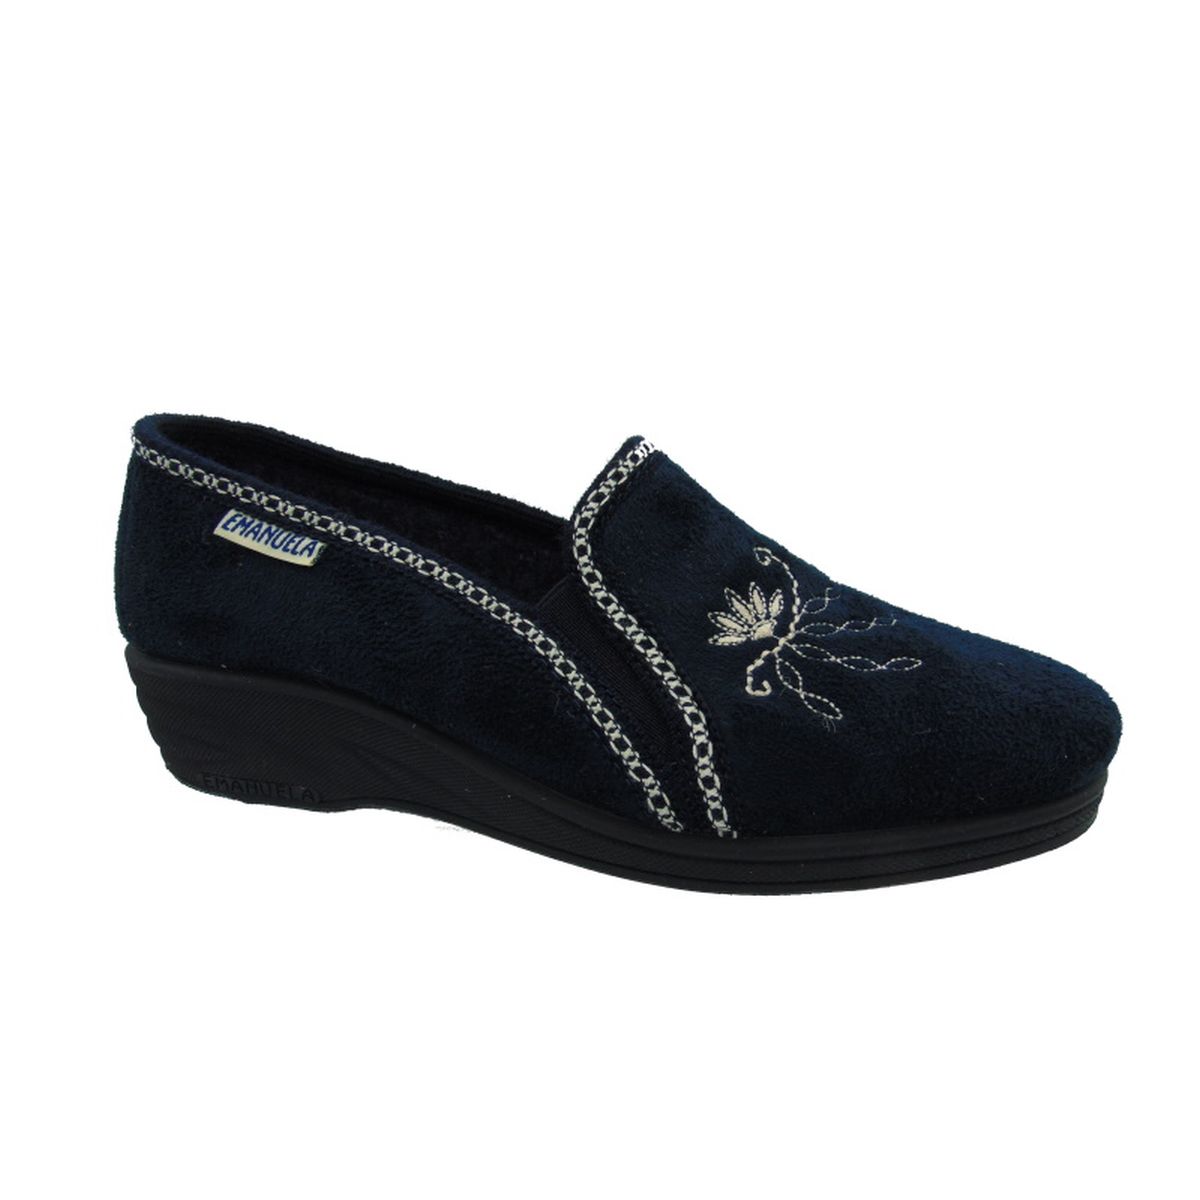 Pantofola Donna con elastici laterali Emanuela 855 Bluimg